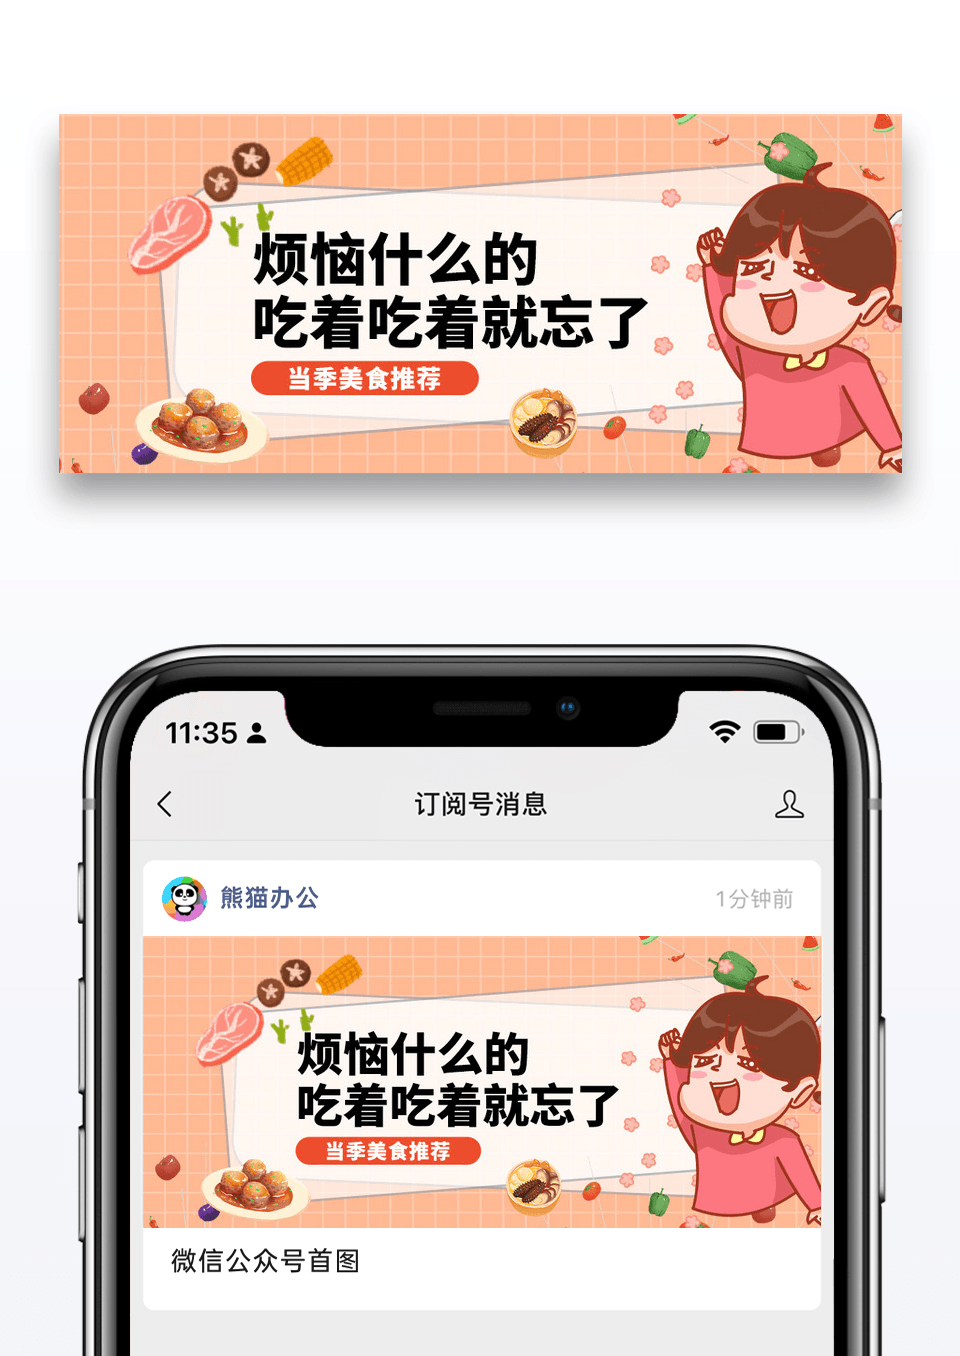 简约美食推荐微信公众号封面图片